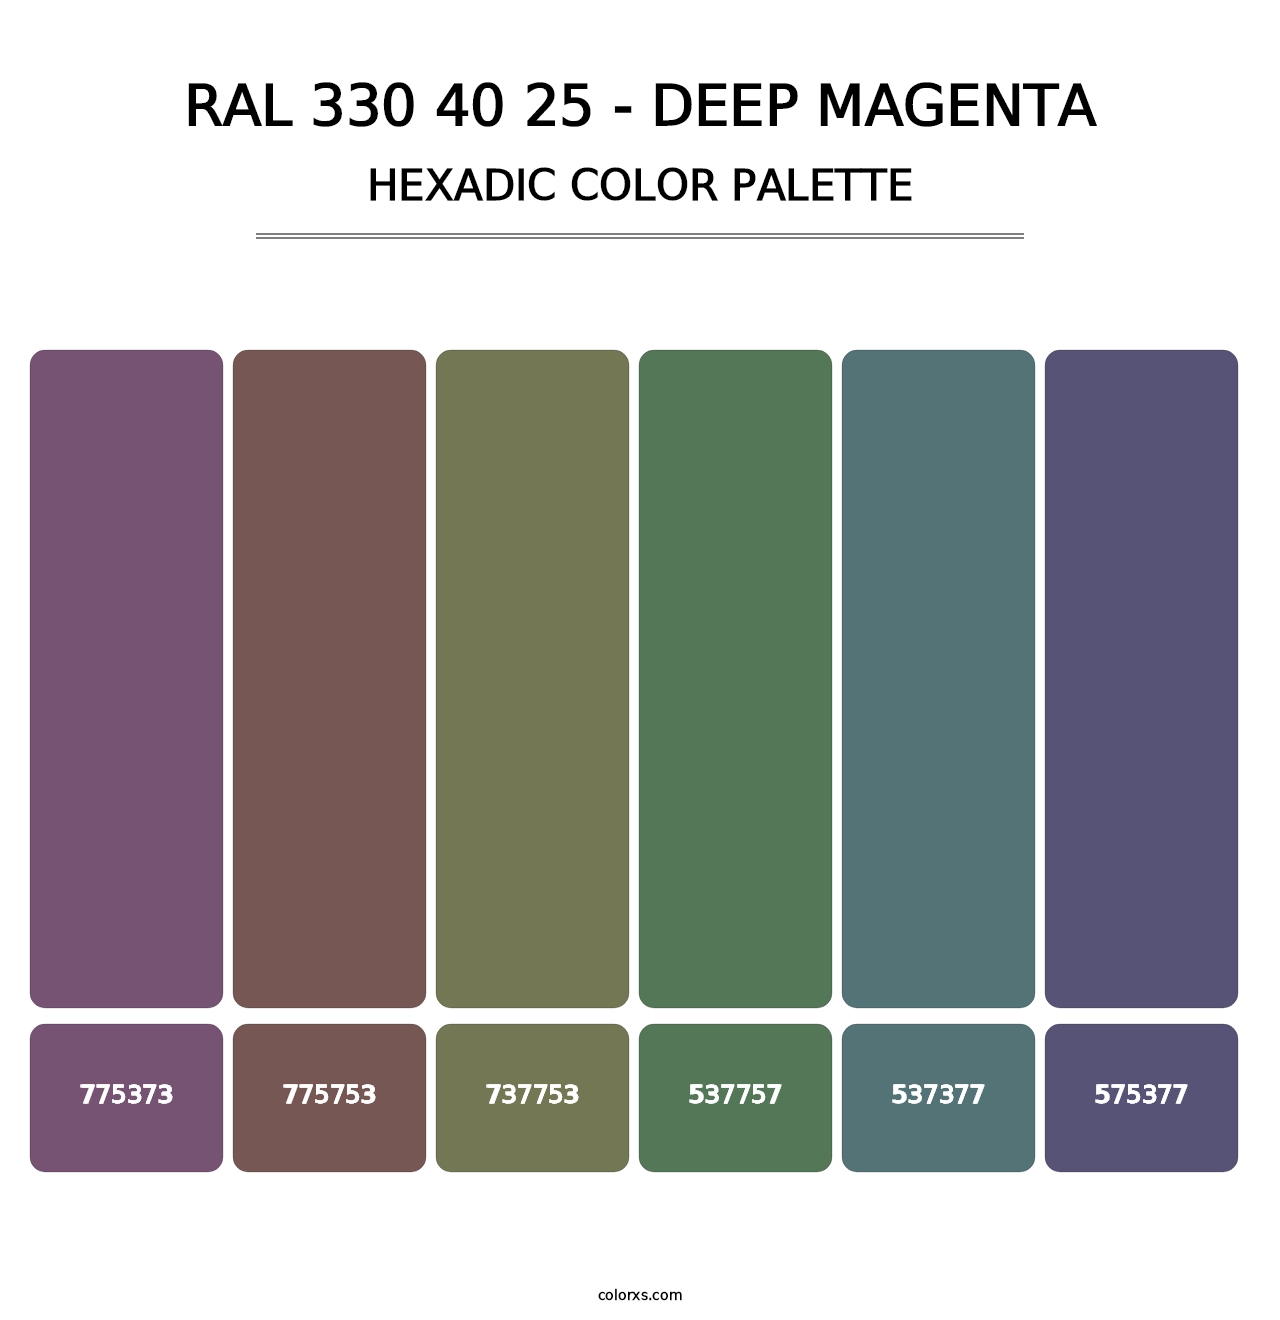 RAL 330 40 25 - Deep Magenta - Hexadic Color Palette